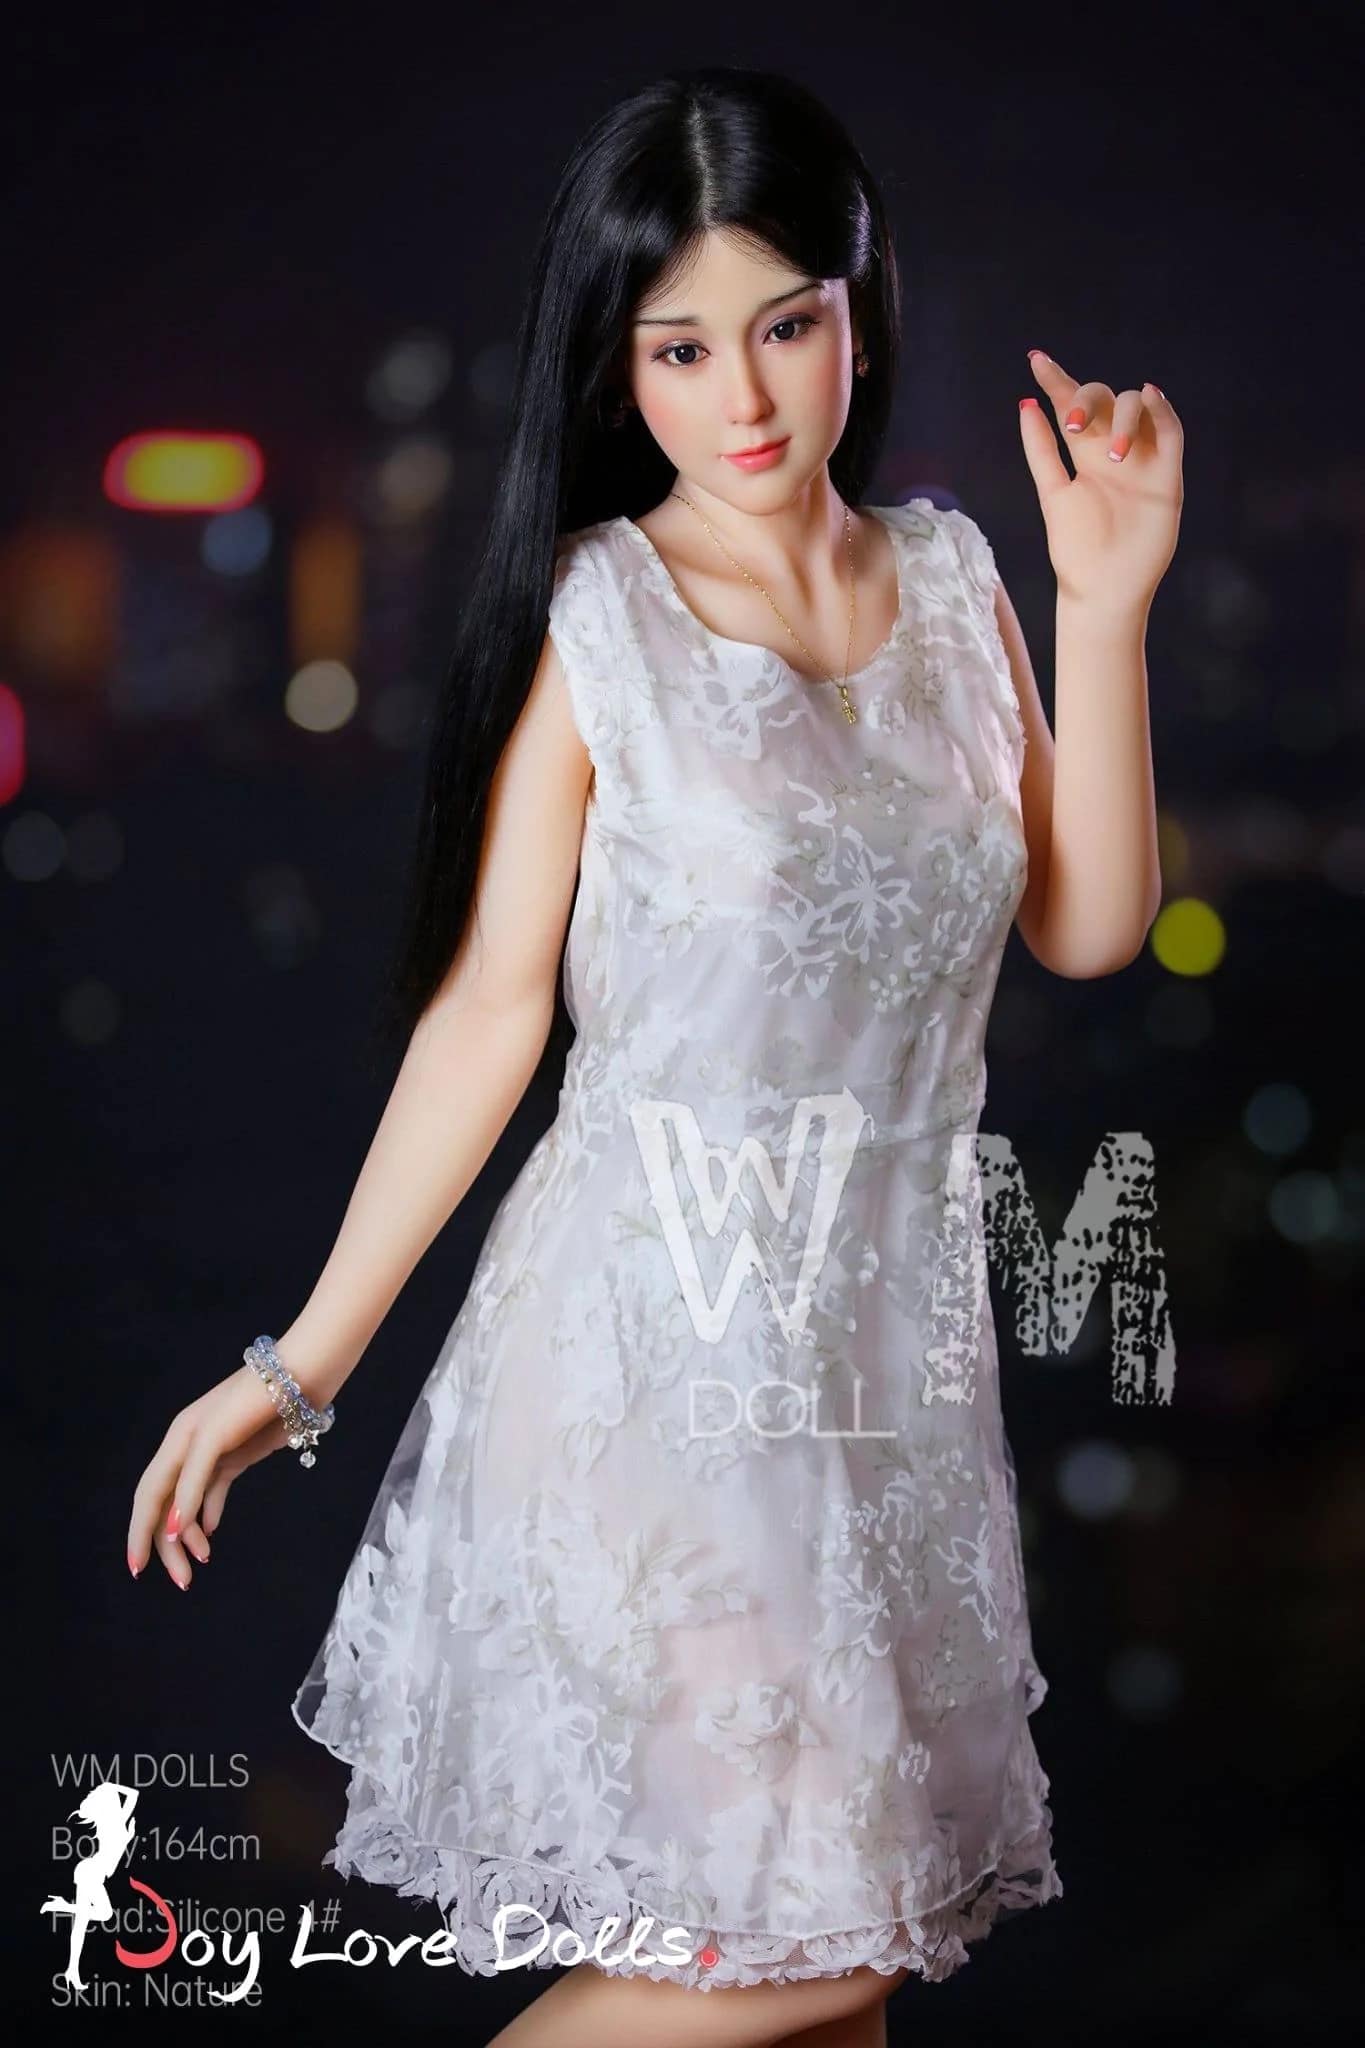  Liu Premium Female Sex Doll. Slide 7